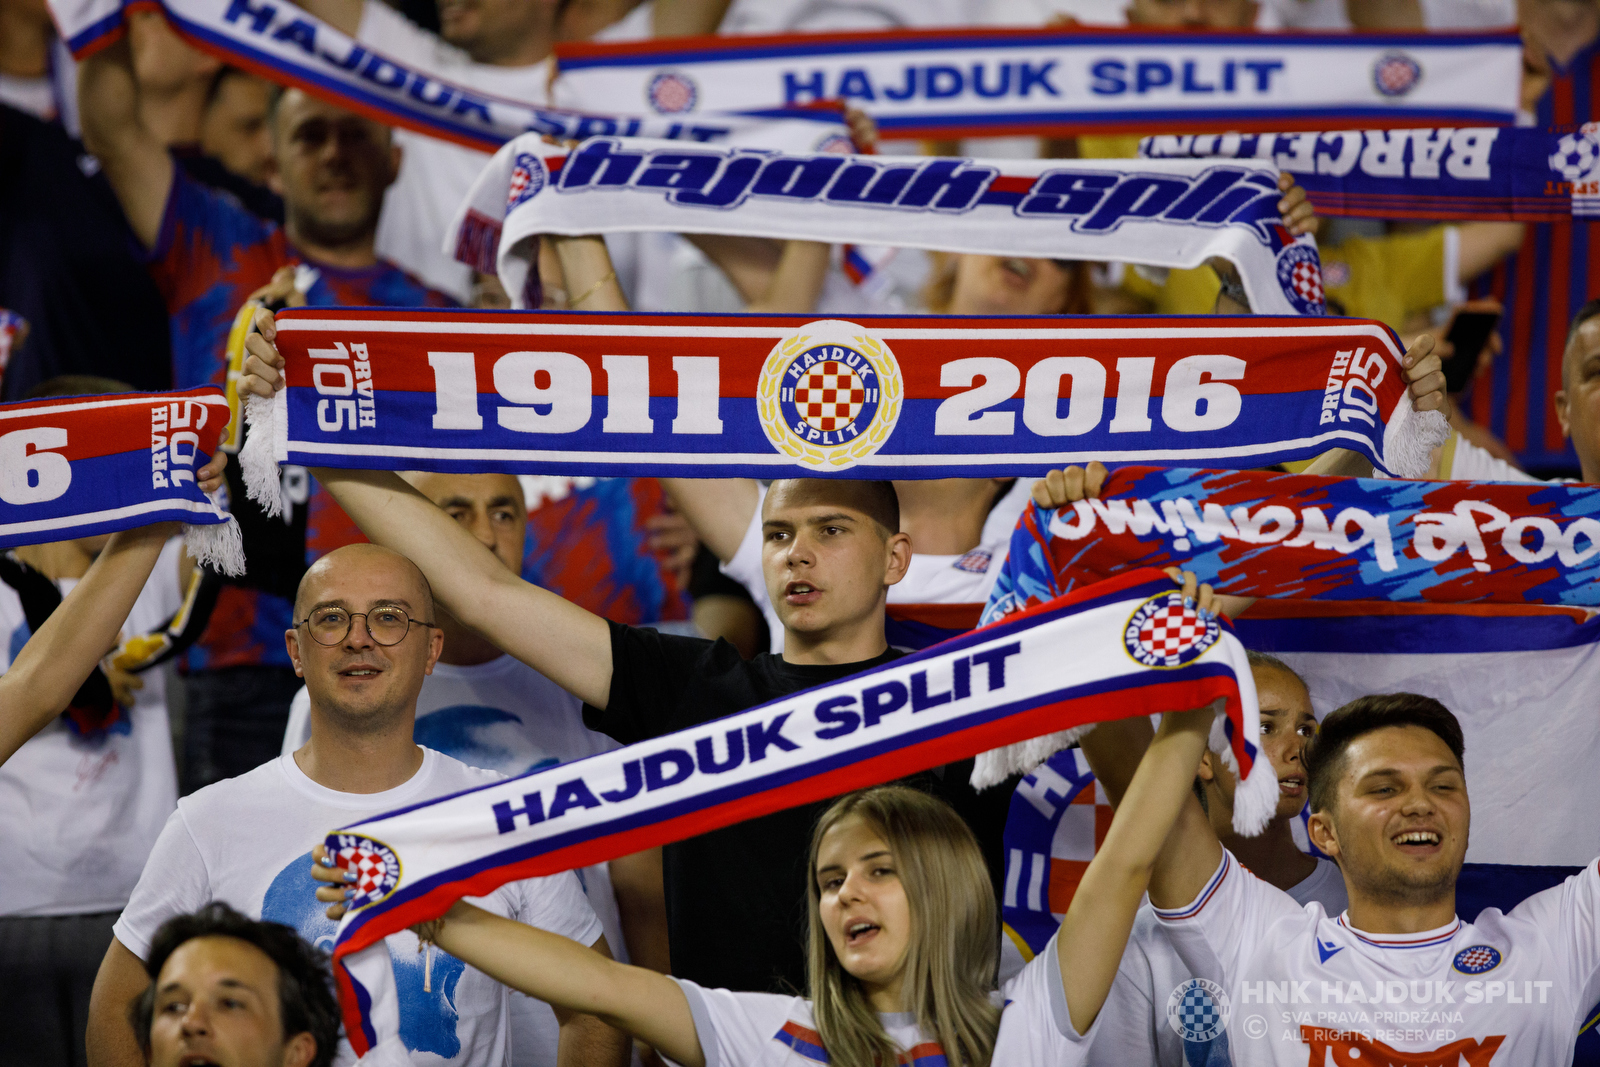 1st HNL League 2016/17, Round #15, HNK Rijeka vs HNK Hajduk Split